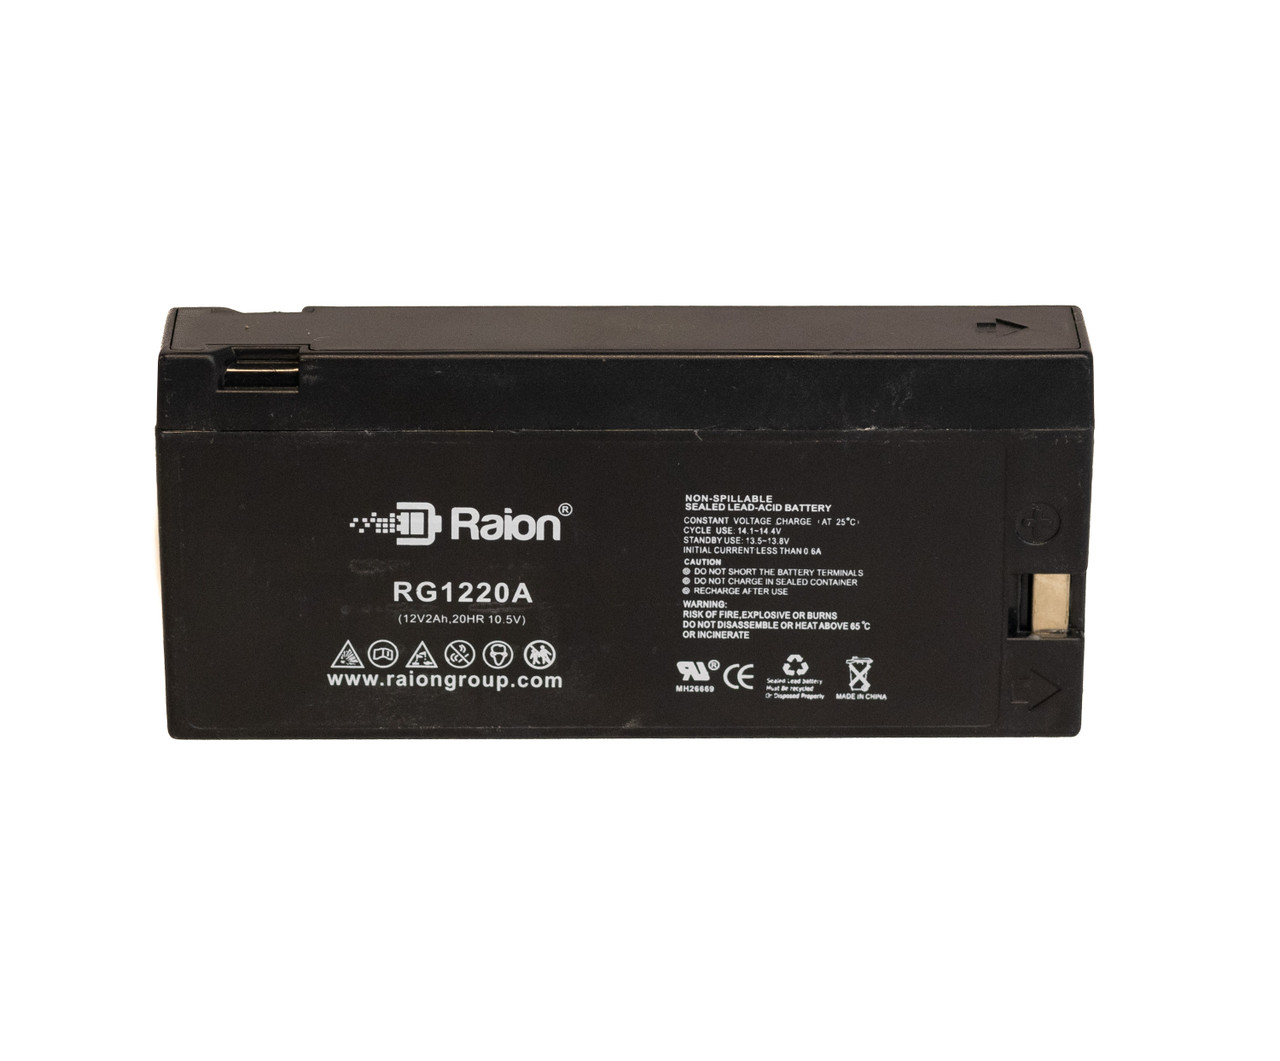 Raion Power RG1220A SLA Battery for Magnavox CVM-720